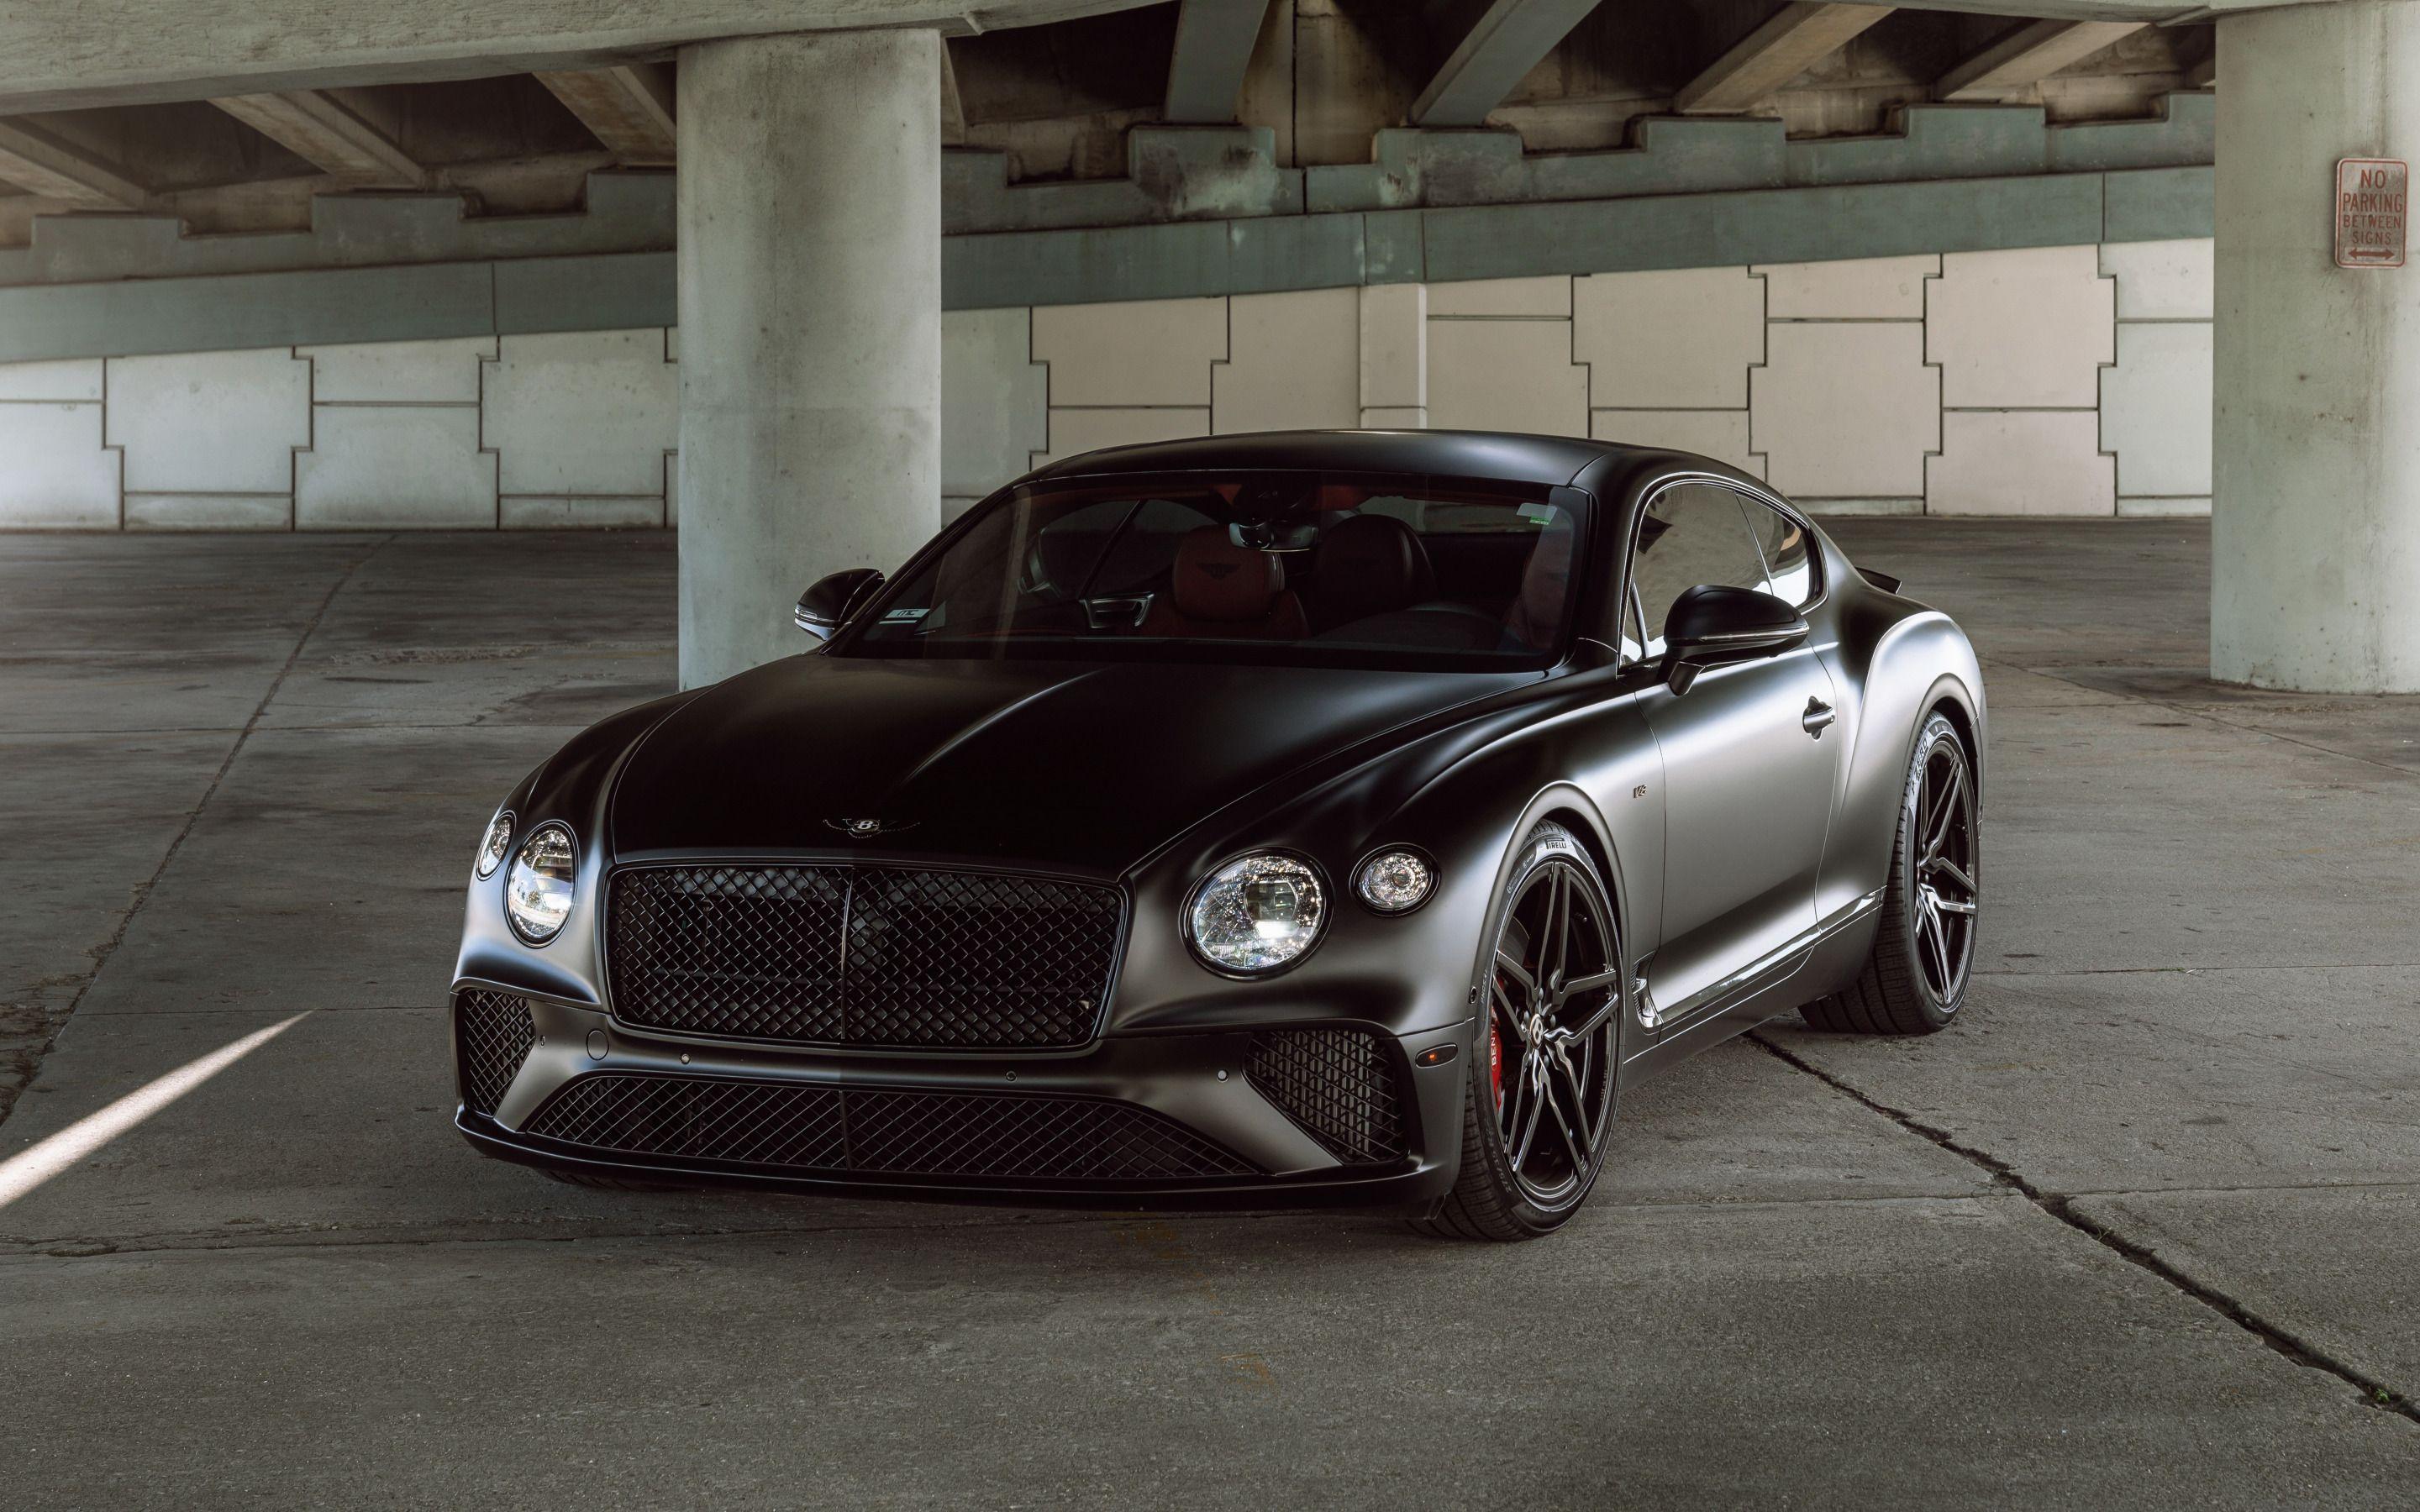 2880x1800 Tải xuống hình nền Bentley Continental GT, ngoại thất, mặt trước, coupe đen mờ, điều chỉnh Continental GT, Continental GT đen mờ, xe sang, xe Anh, Bentley cho máy tính để bàn với độ phân giải 2880x1800.  Hình ảnh HD chất lượng cao